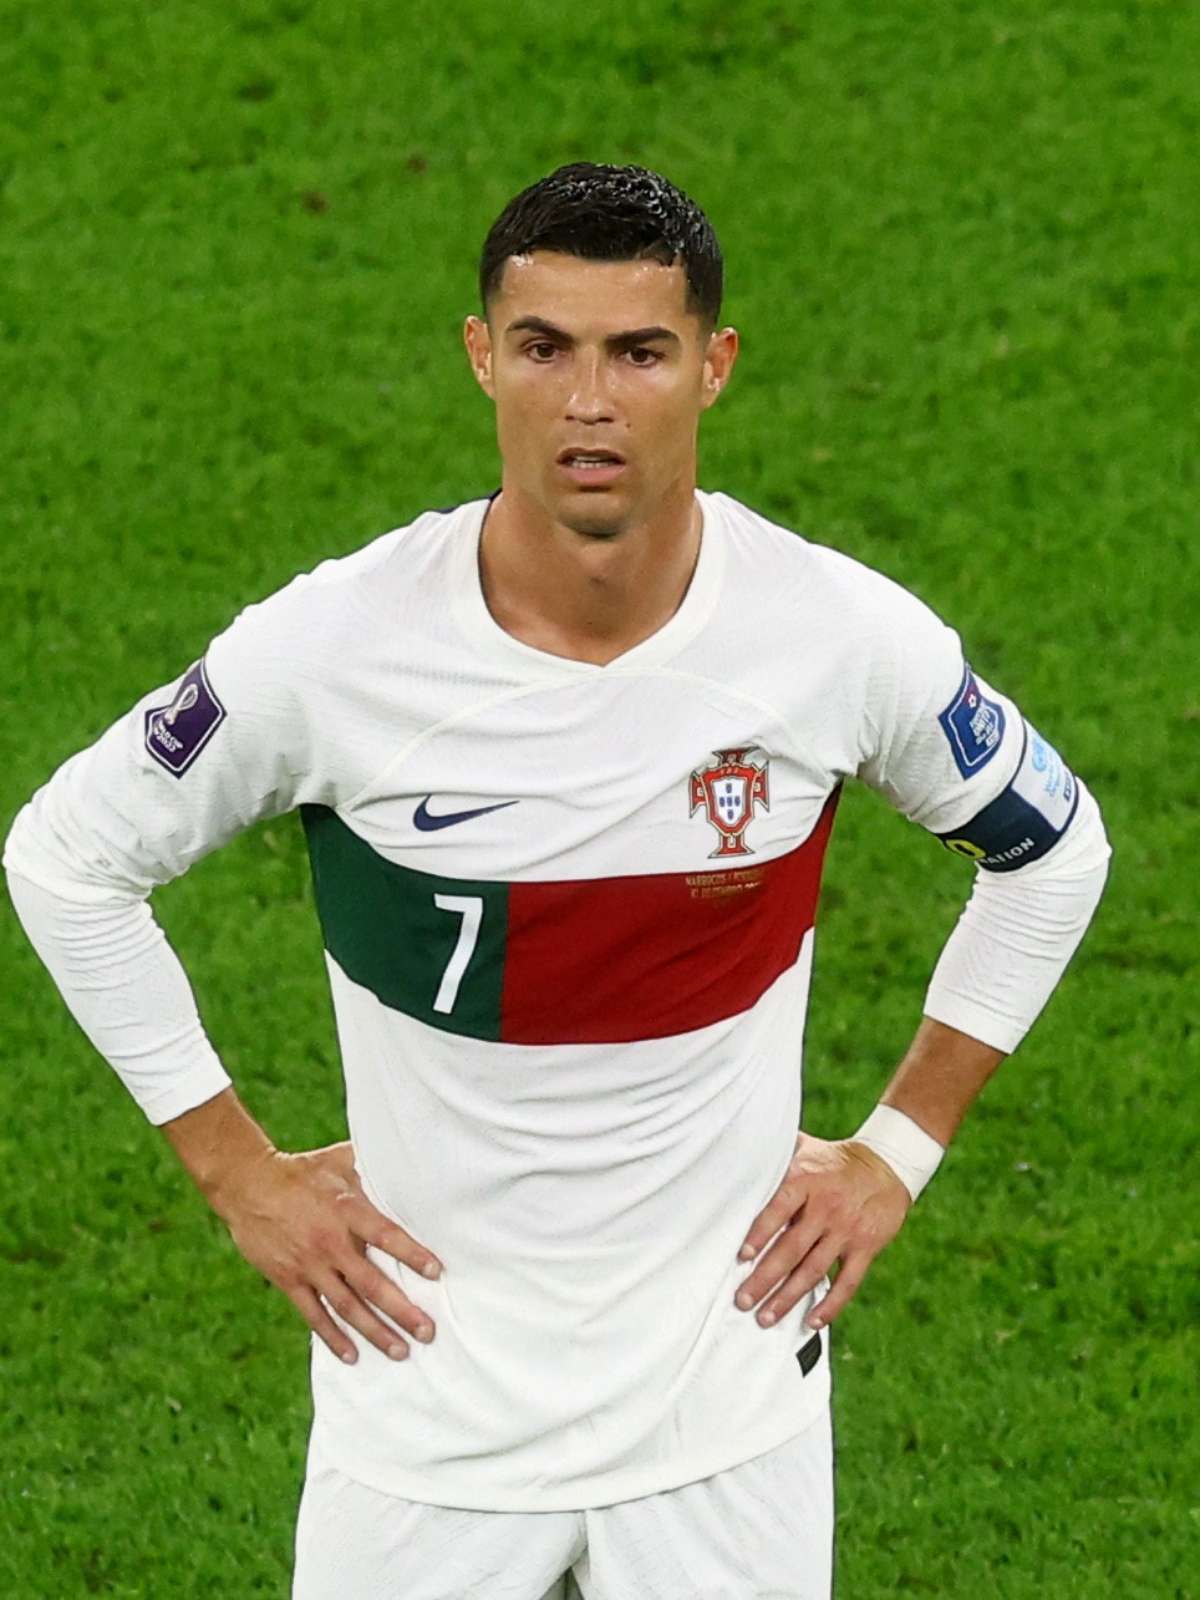 Cristiano Ronaldo marca, mas Portugal é eliminado da Copa